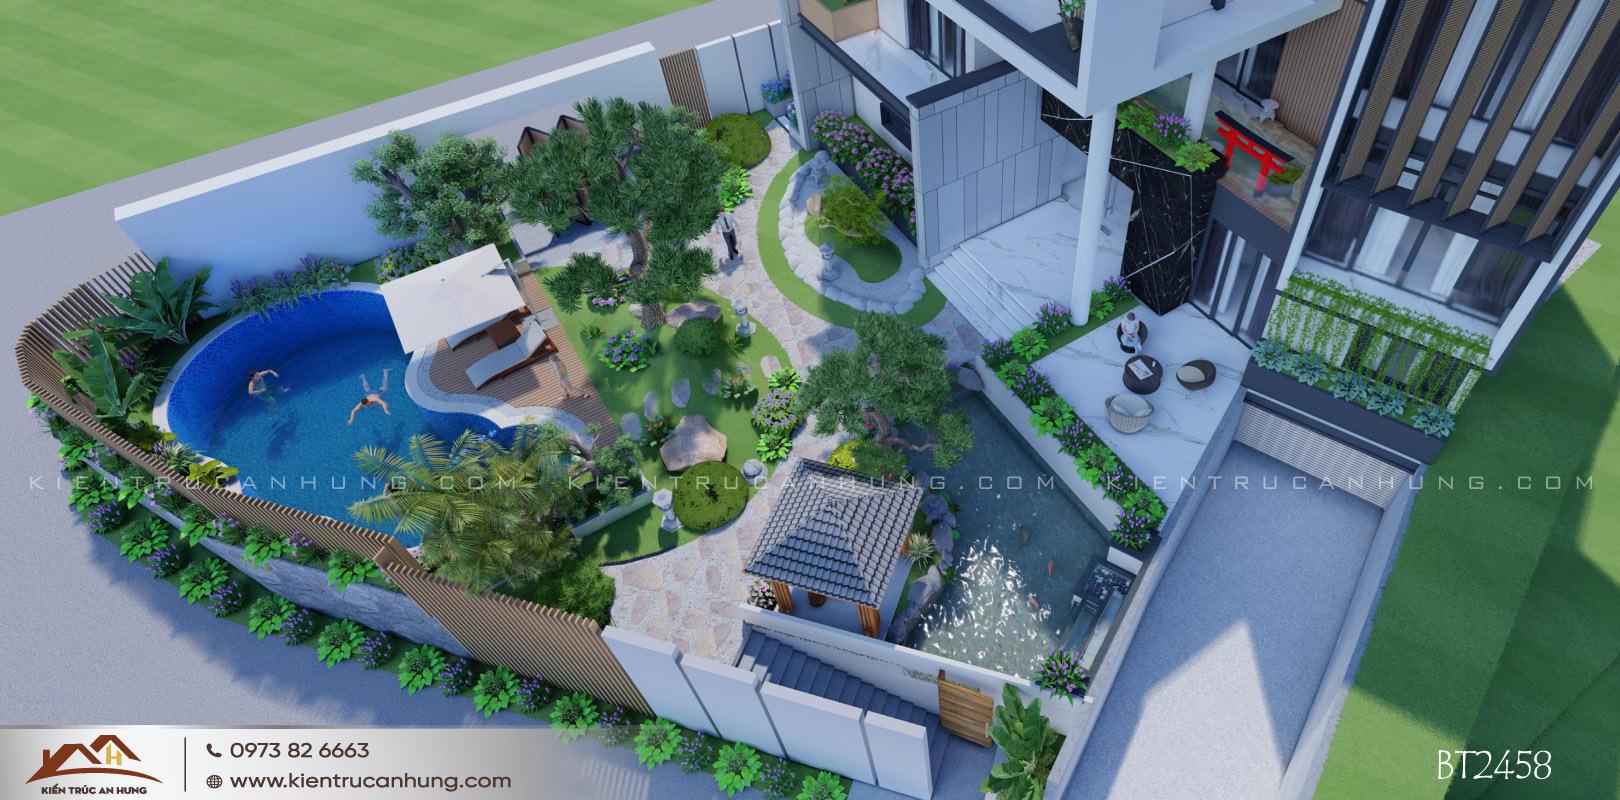 Đơn giá thiết kế sân vườn chi tiết cho nhà biệt thự vườn 80.000đ/m2